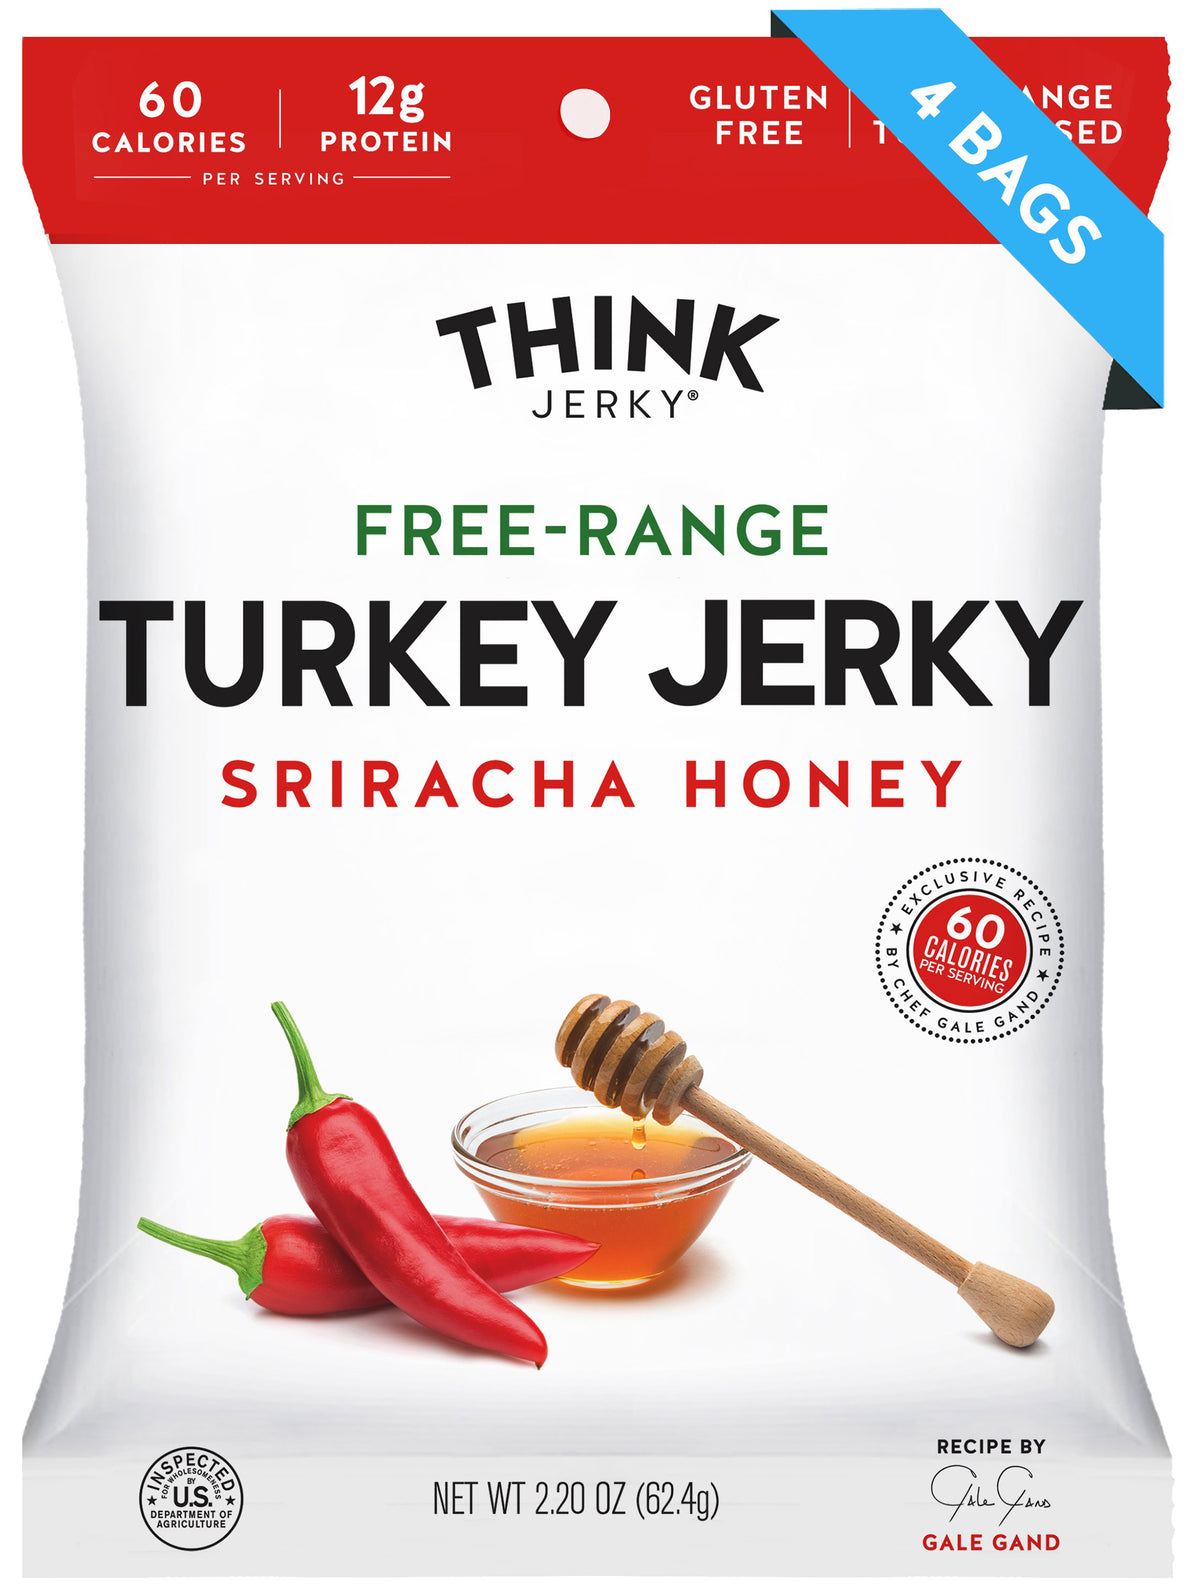 Sriracha Honey Free-Range Turkey Jerky – Think Jerky